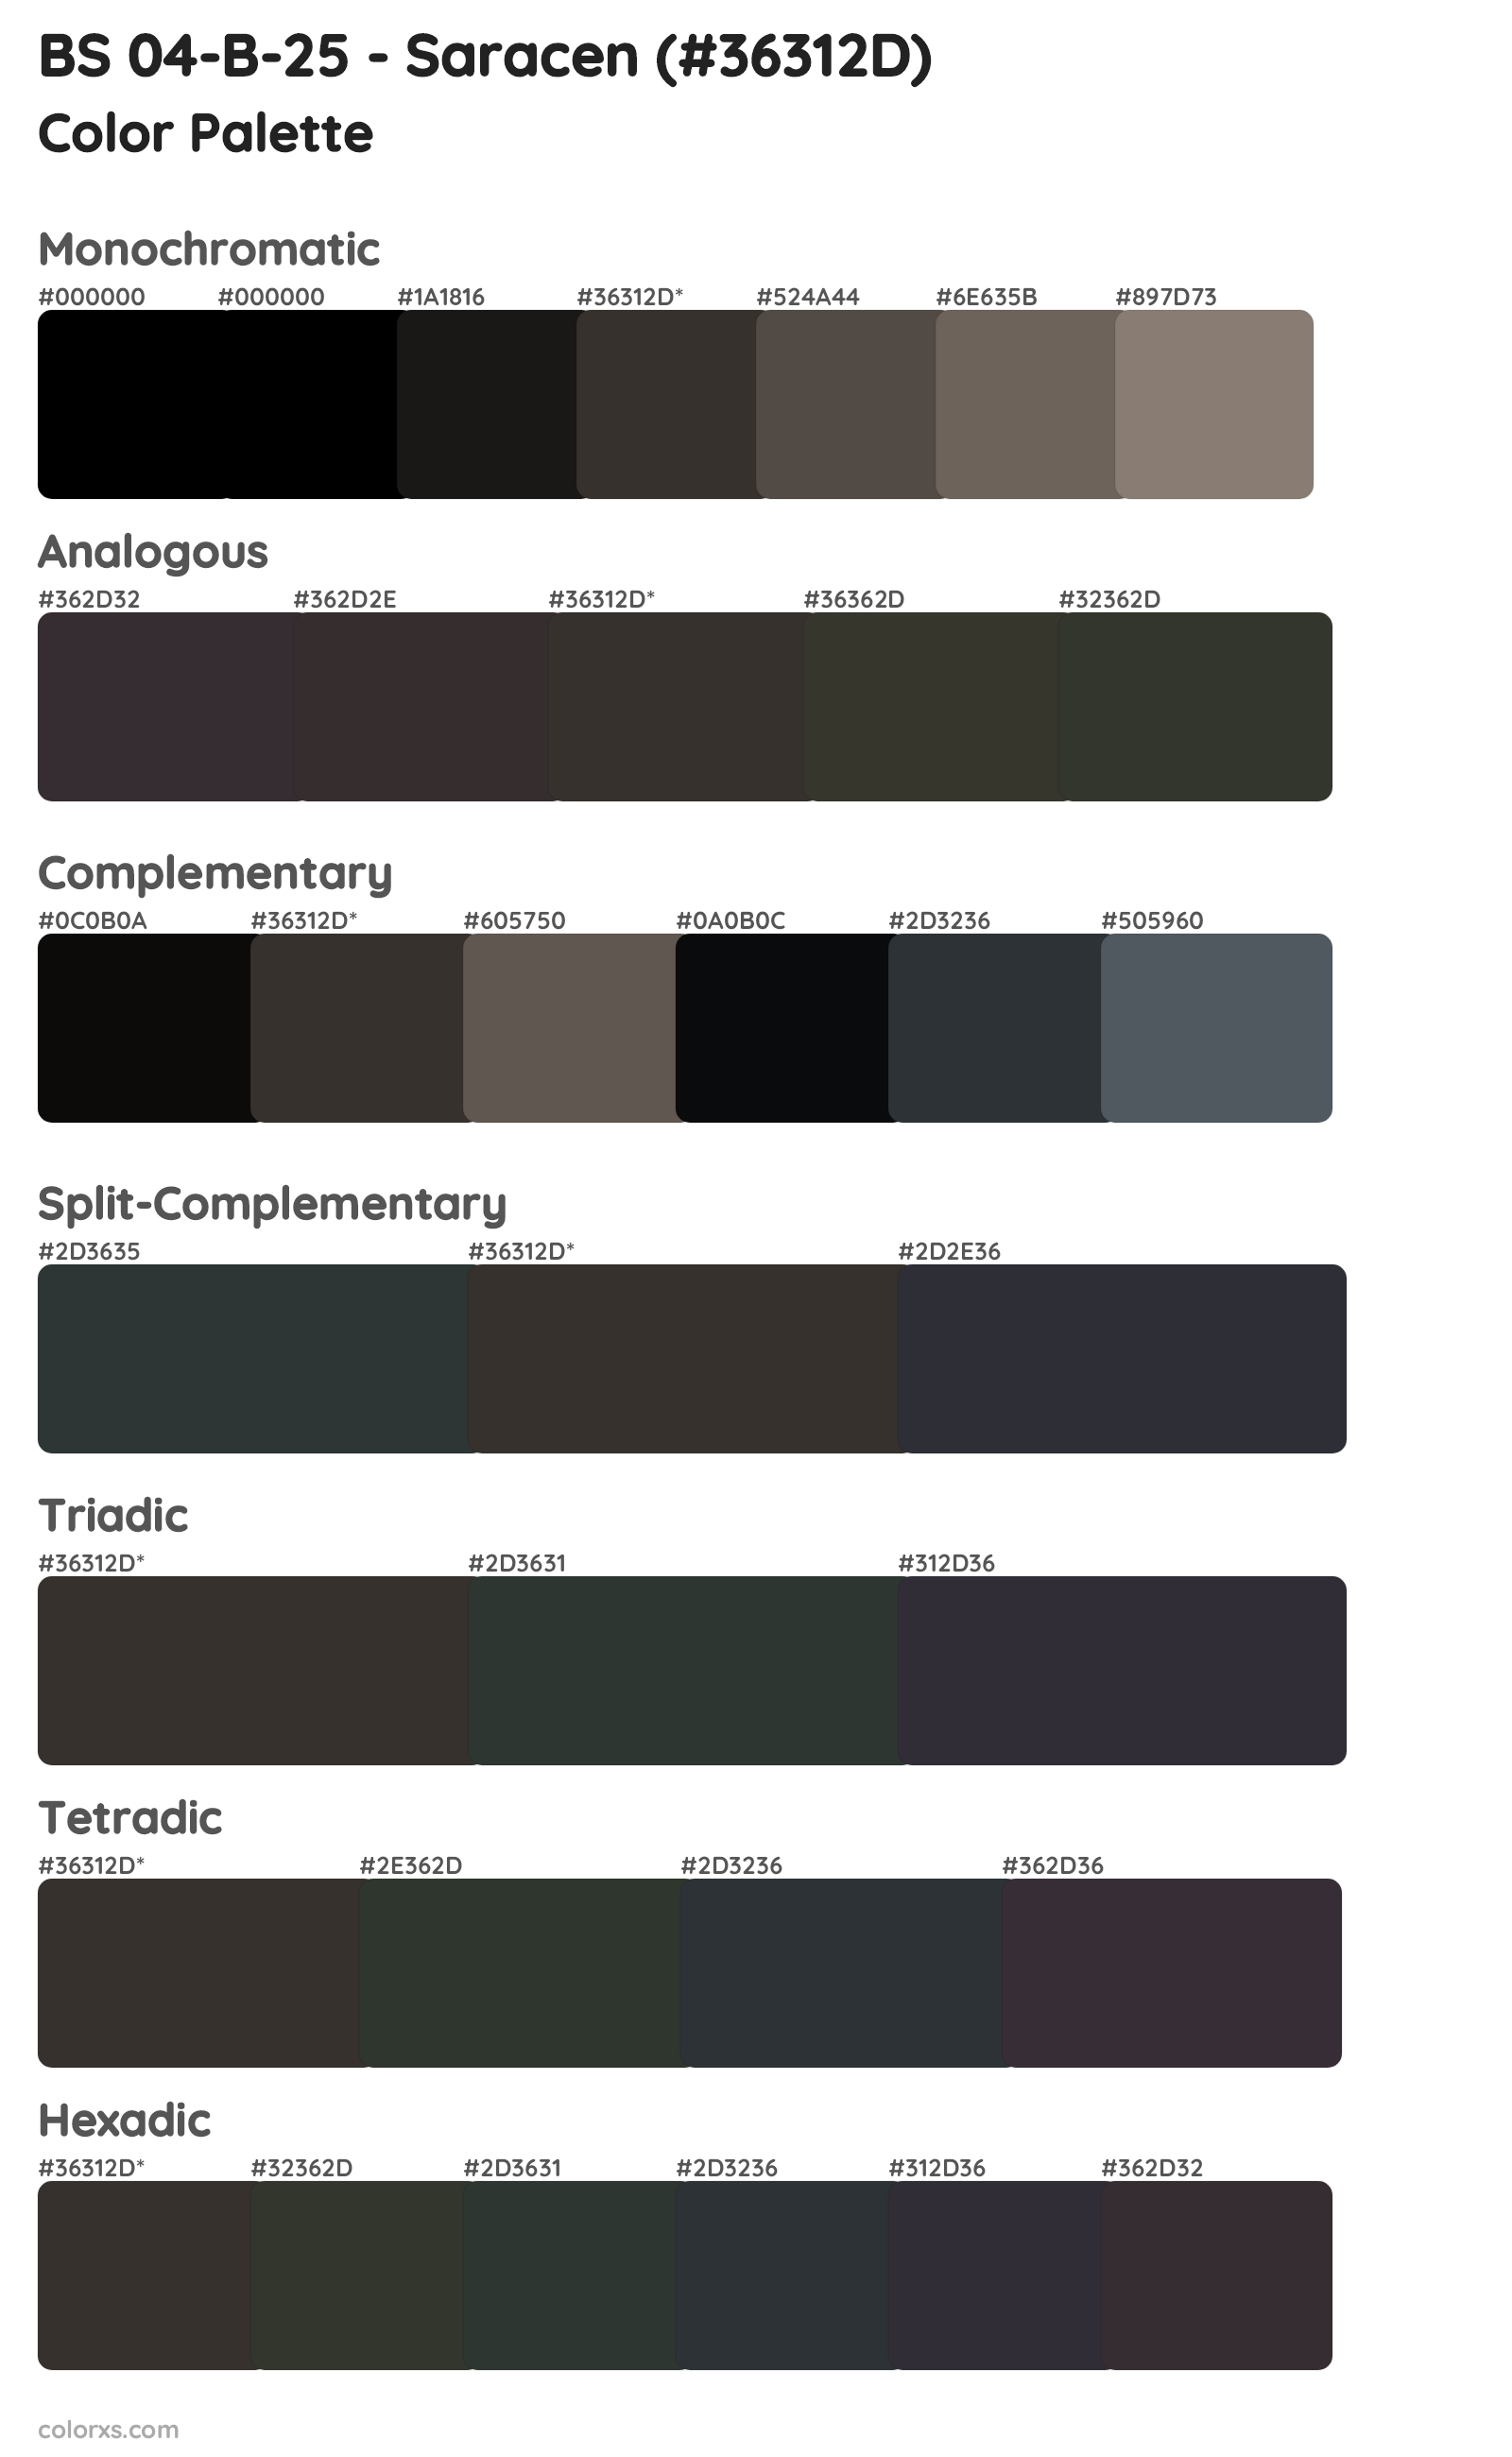 BS 04-B-25 - Saracen Color Scheme Palettes